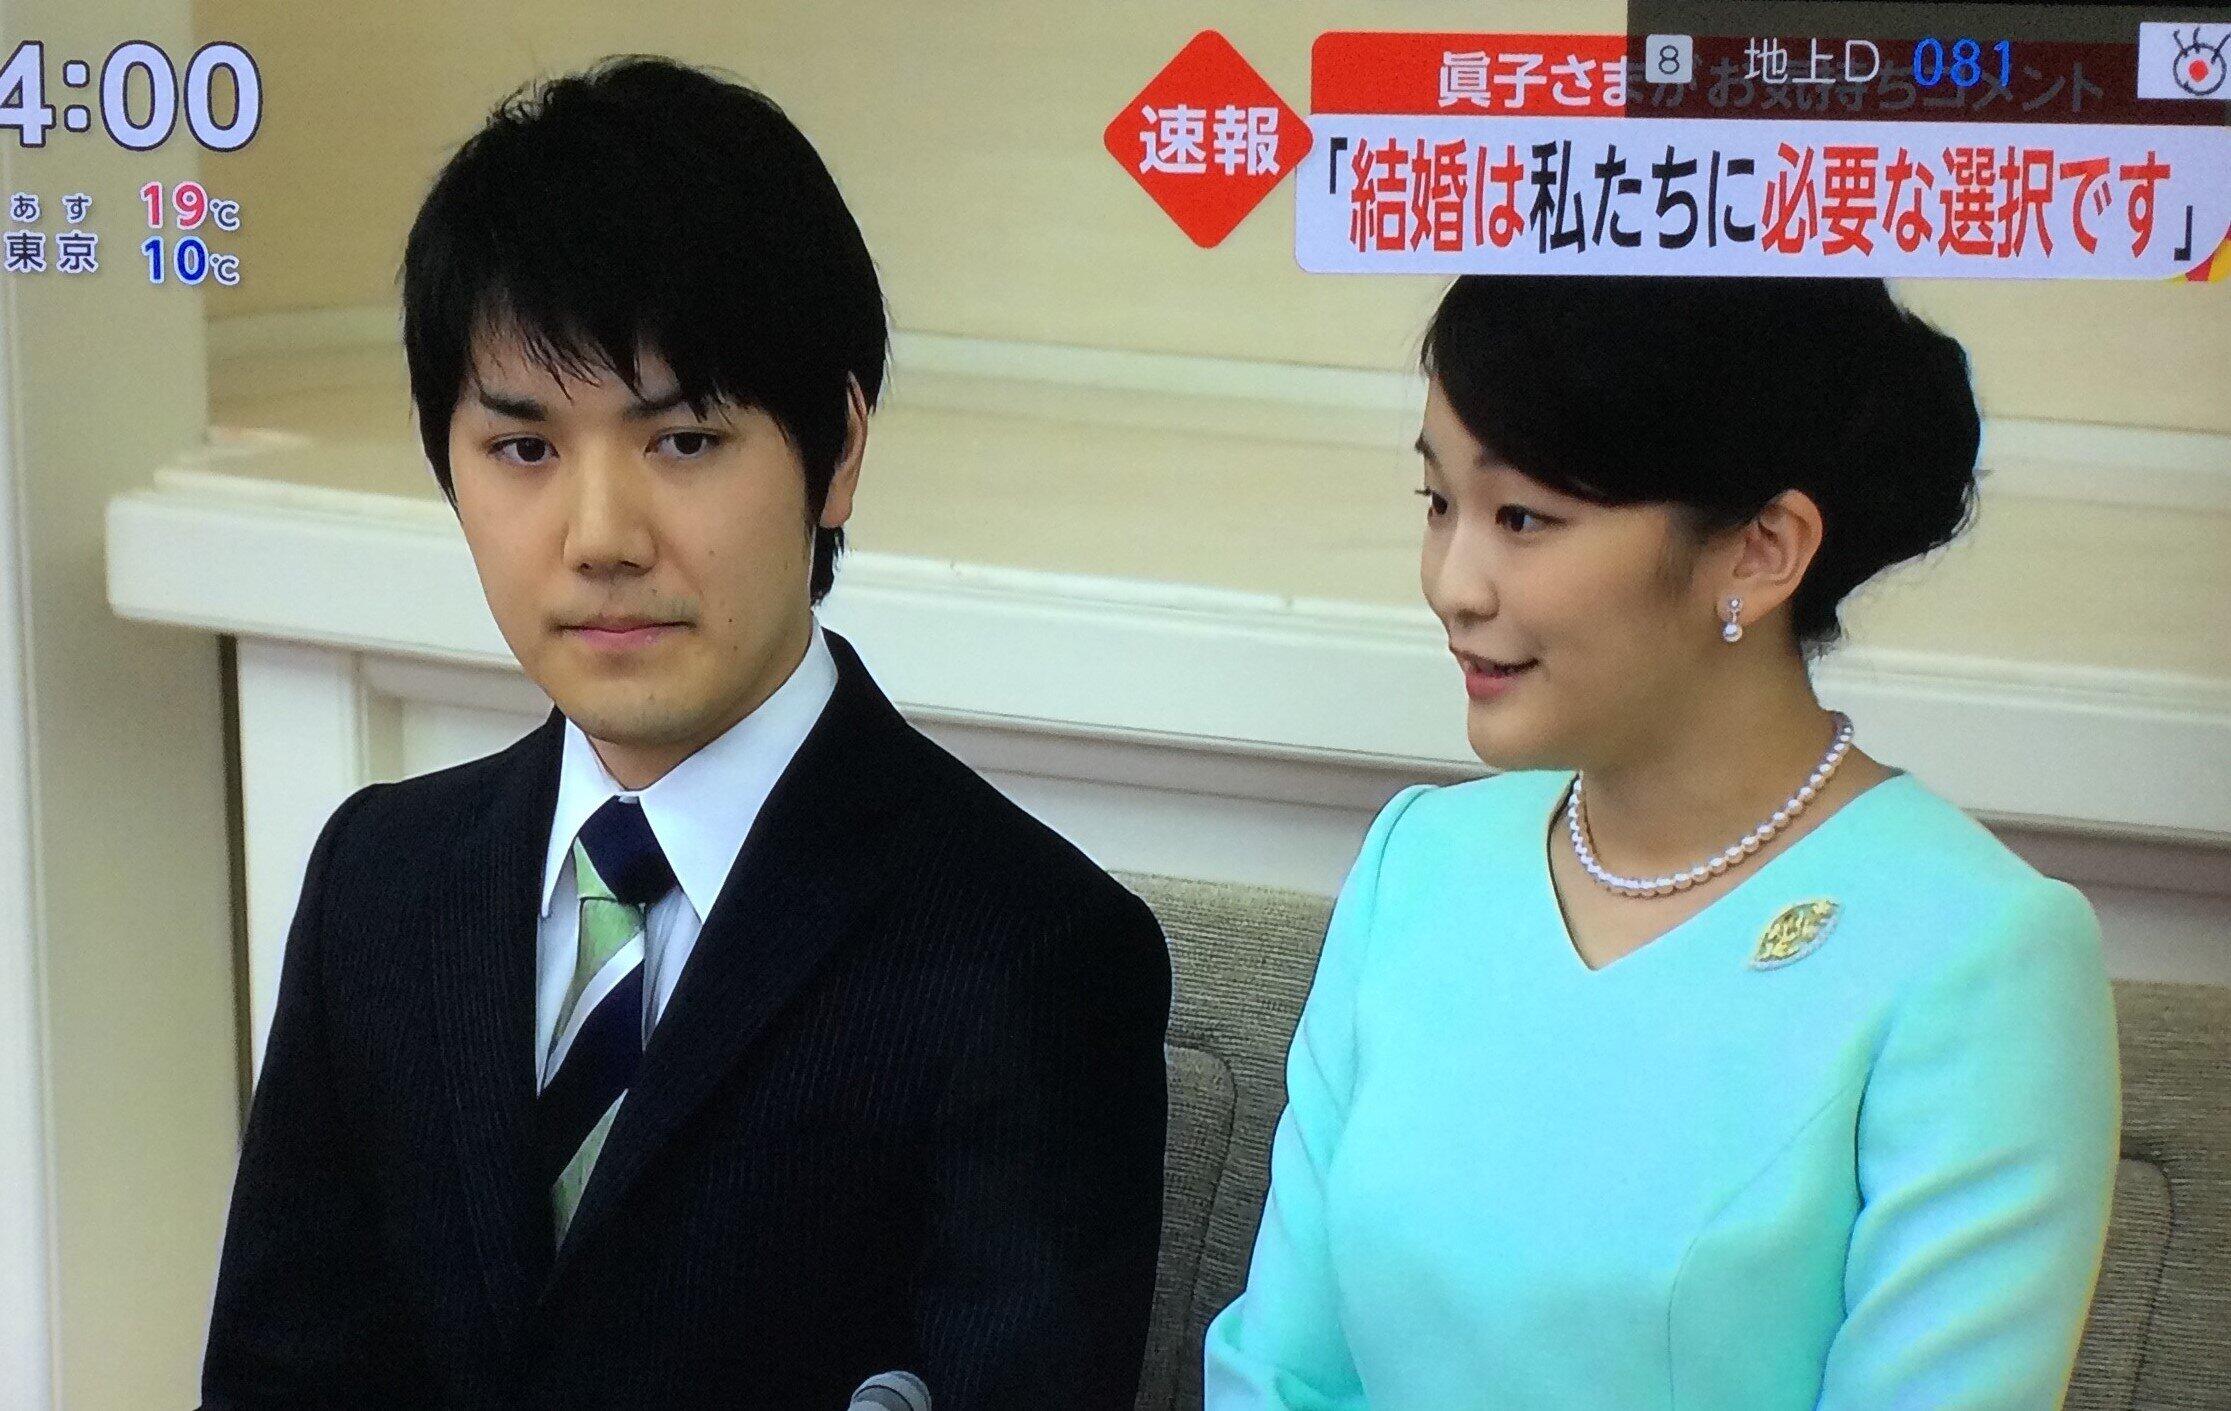 眞子さんの「結婚への決意」を速報するフジテレビのニュース